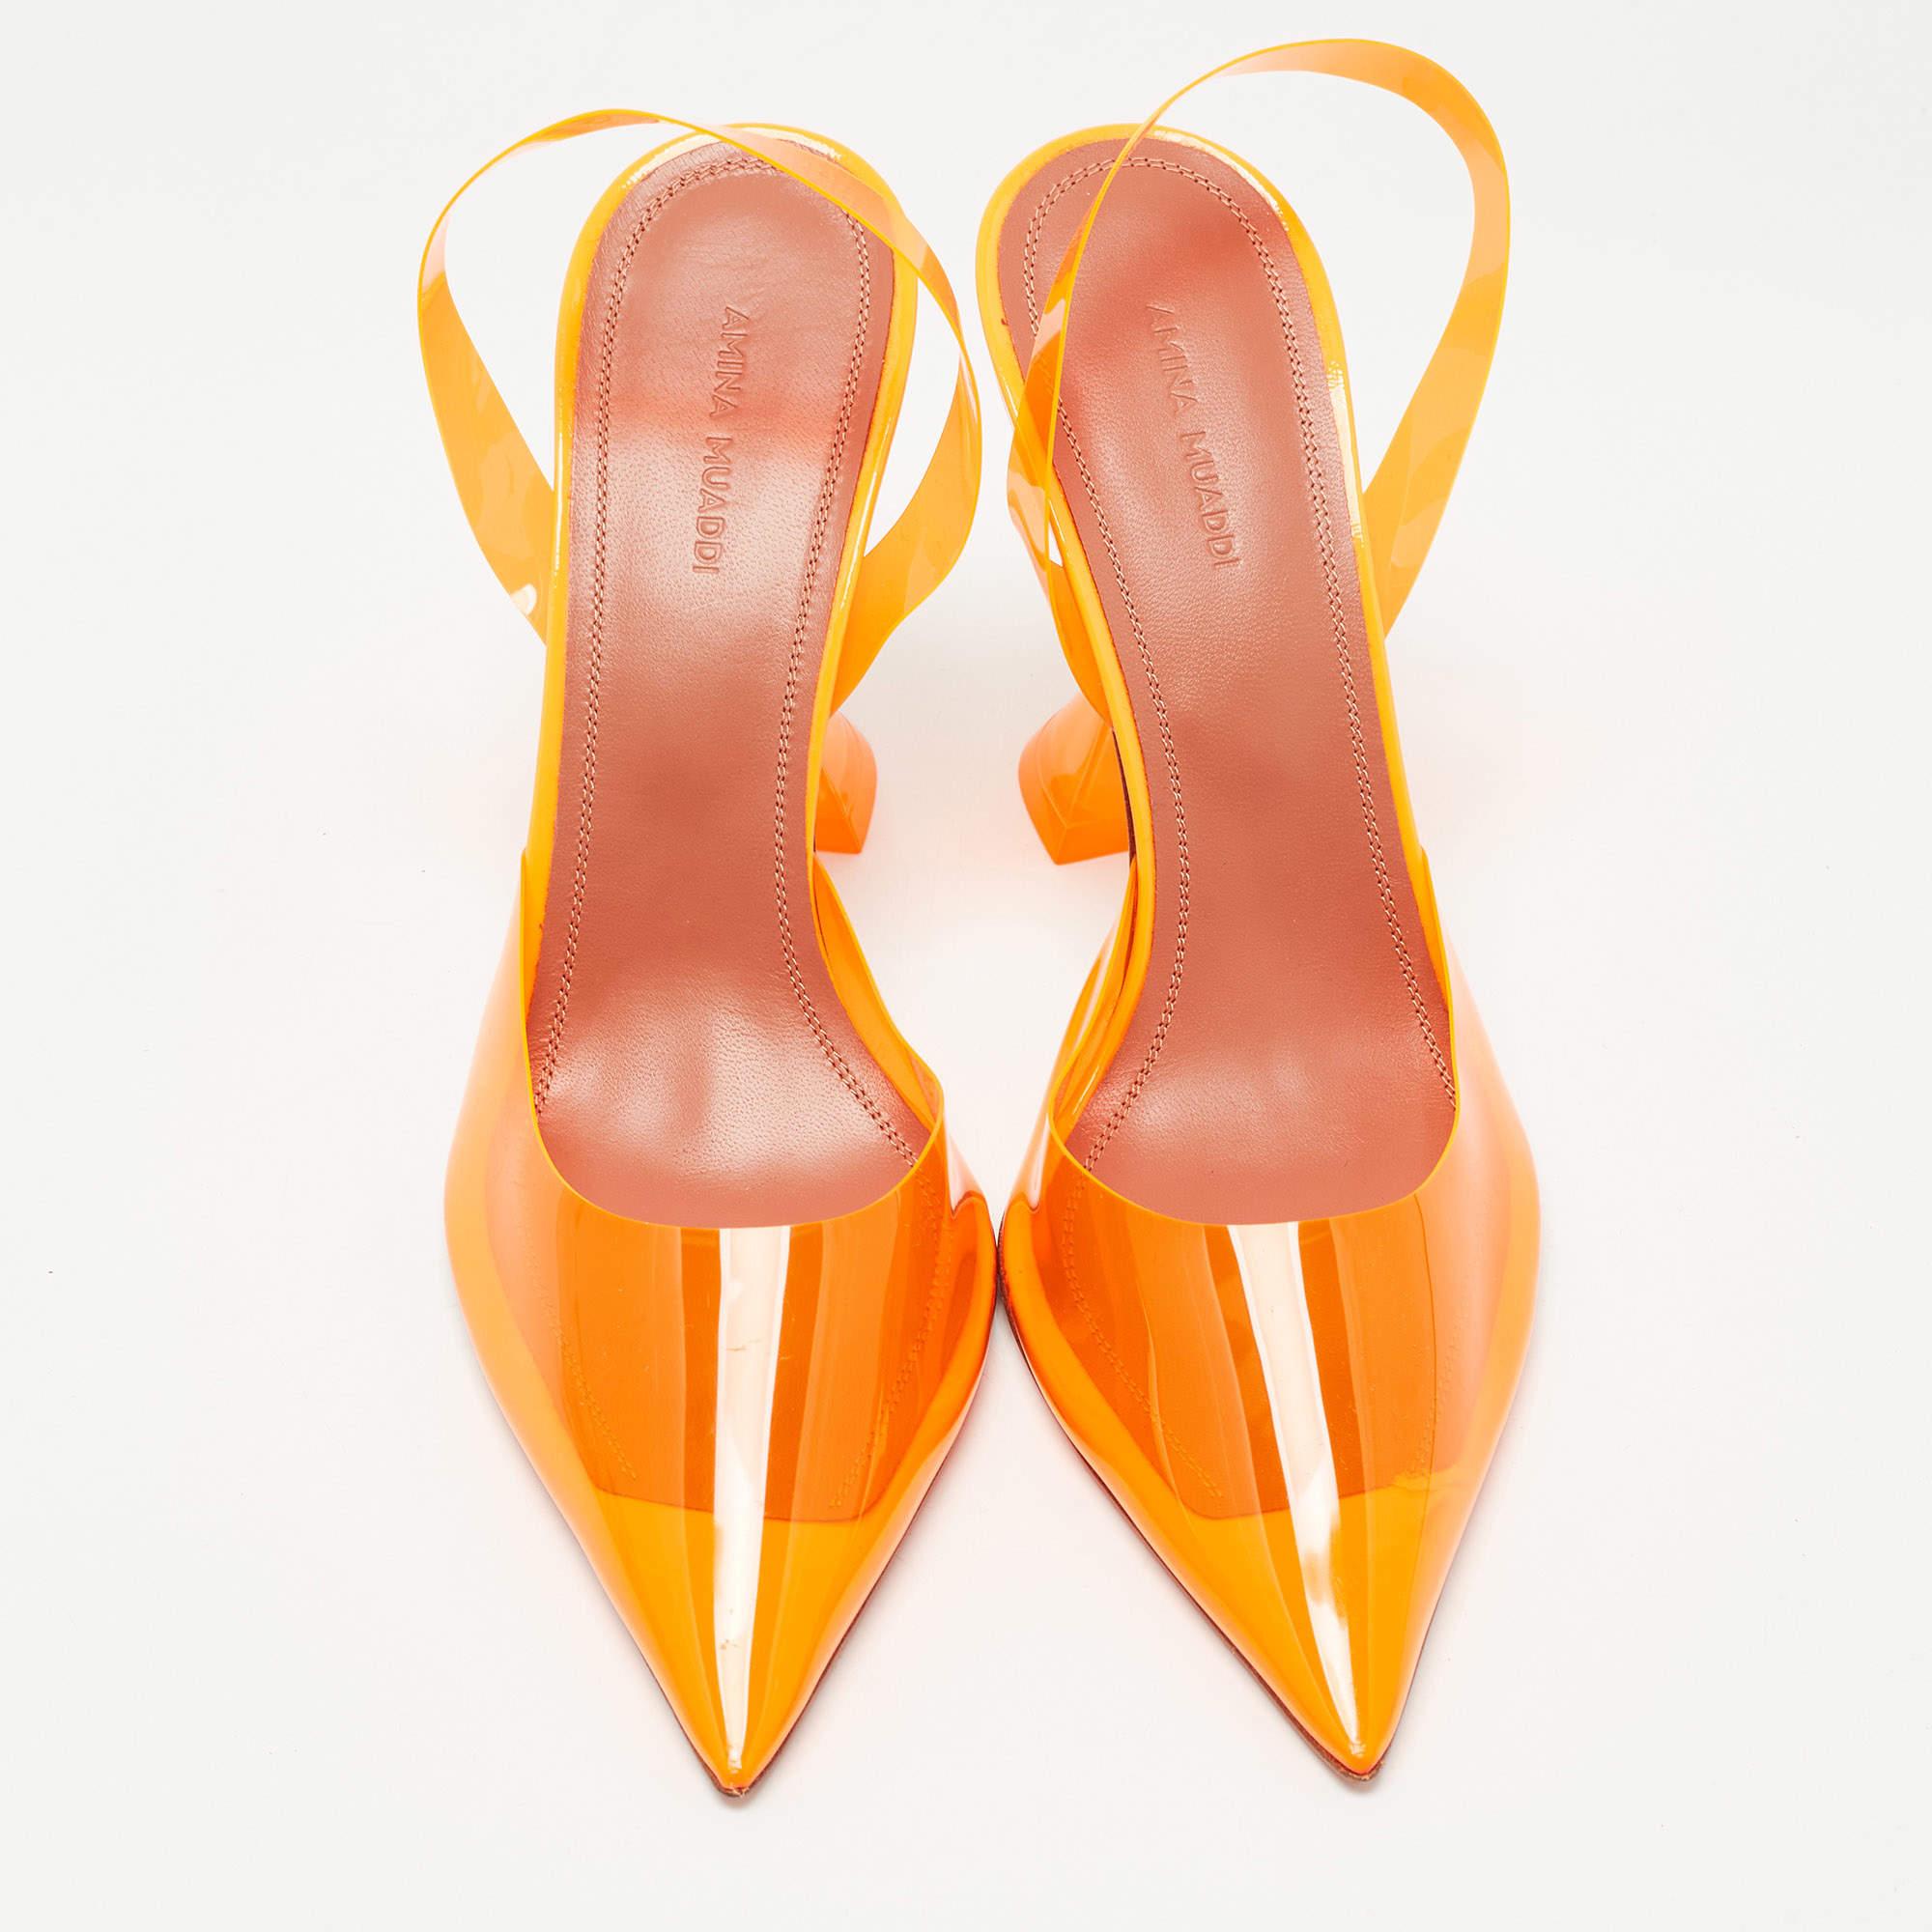 Amina Muaddi est probablement l'un des noms les plus en vogue actuellement dans le monde de la chaussure de créateur. La marque a réussi à s'emparer des caddies, des placards et des cœurs des amateurs de chaussures. Les talons pyramidaux (désormais